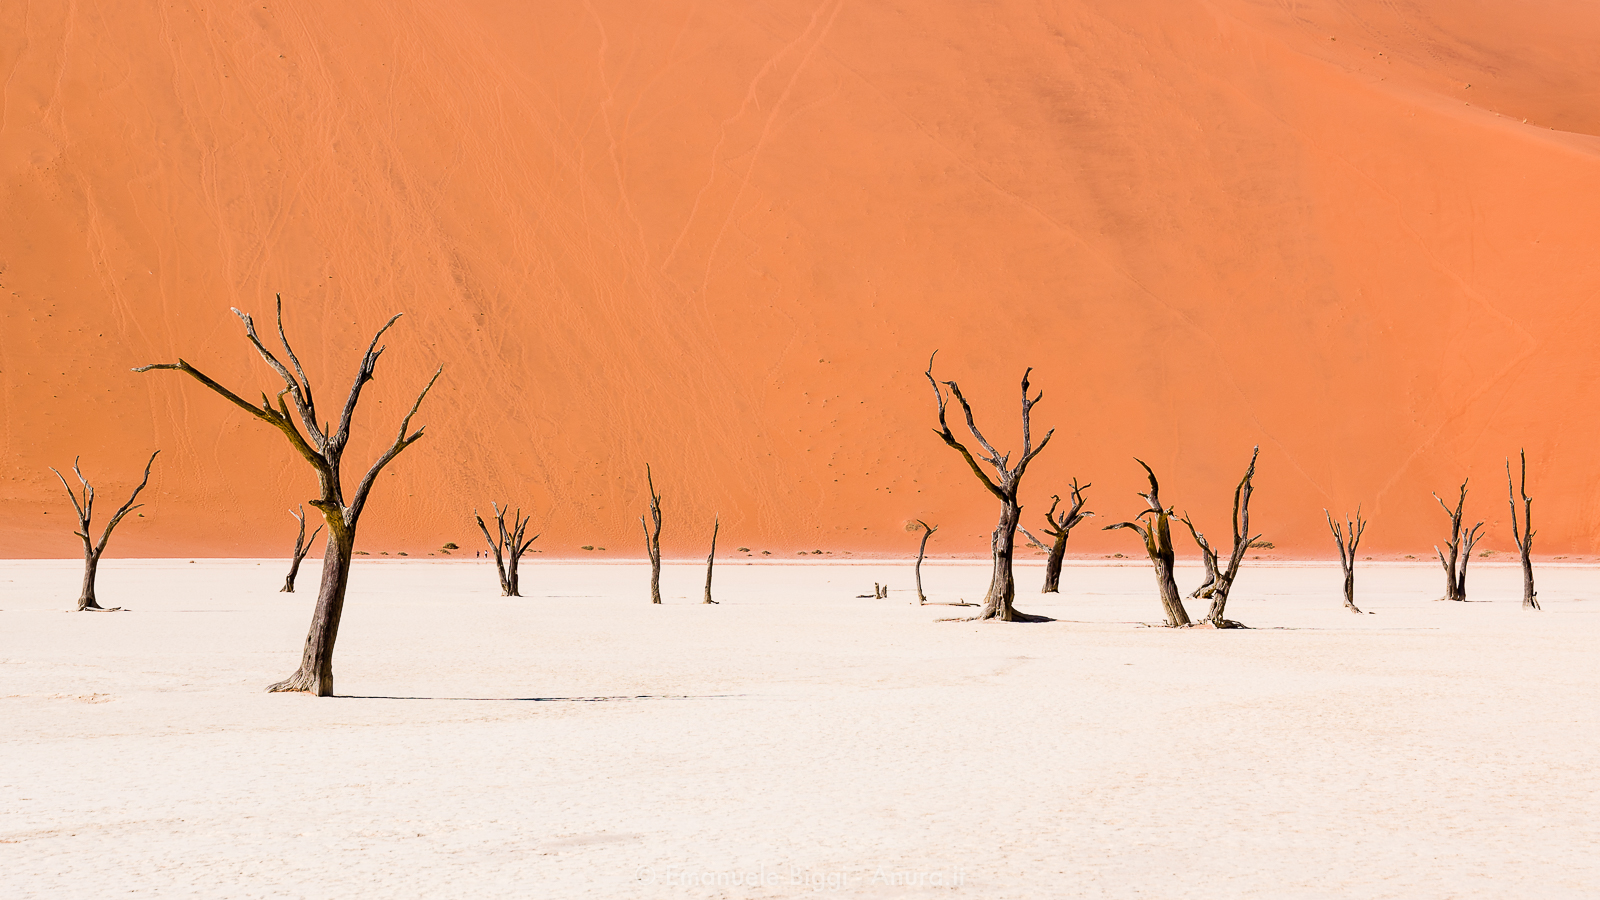 Paesaggi namibiani. Sossusvlei. Uno dei luoghi più magici del paesaggio namibiano. E'una pozza d'acqua effimera circondata da alte dune, situata nel deserto del Namib meridionale.